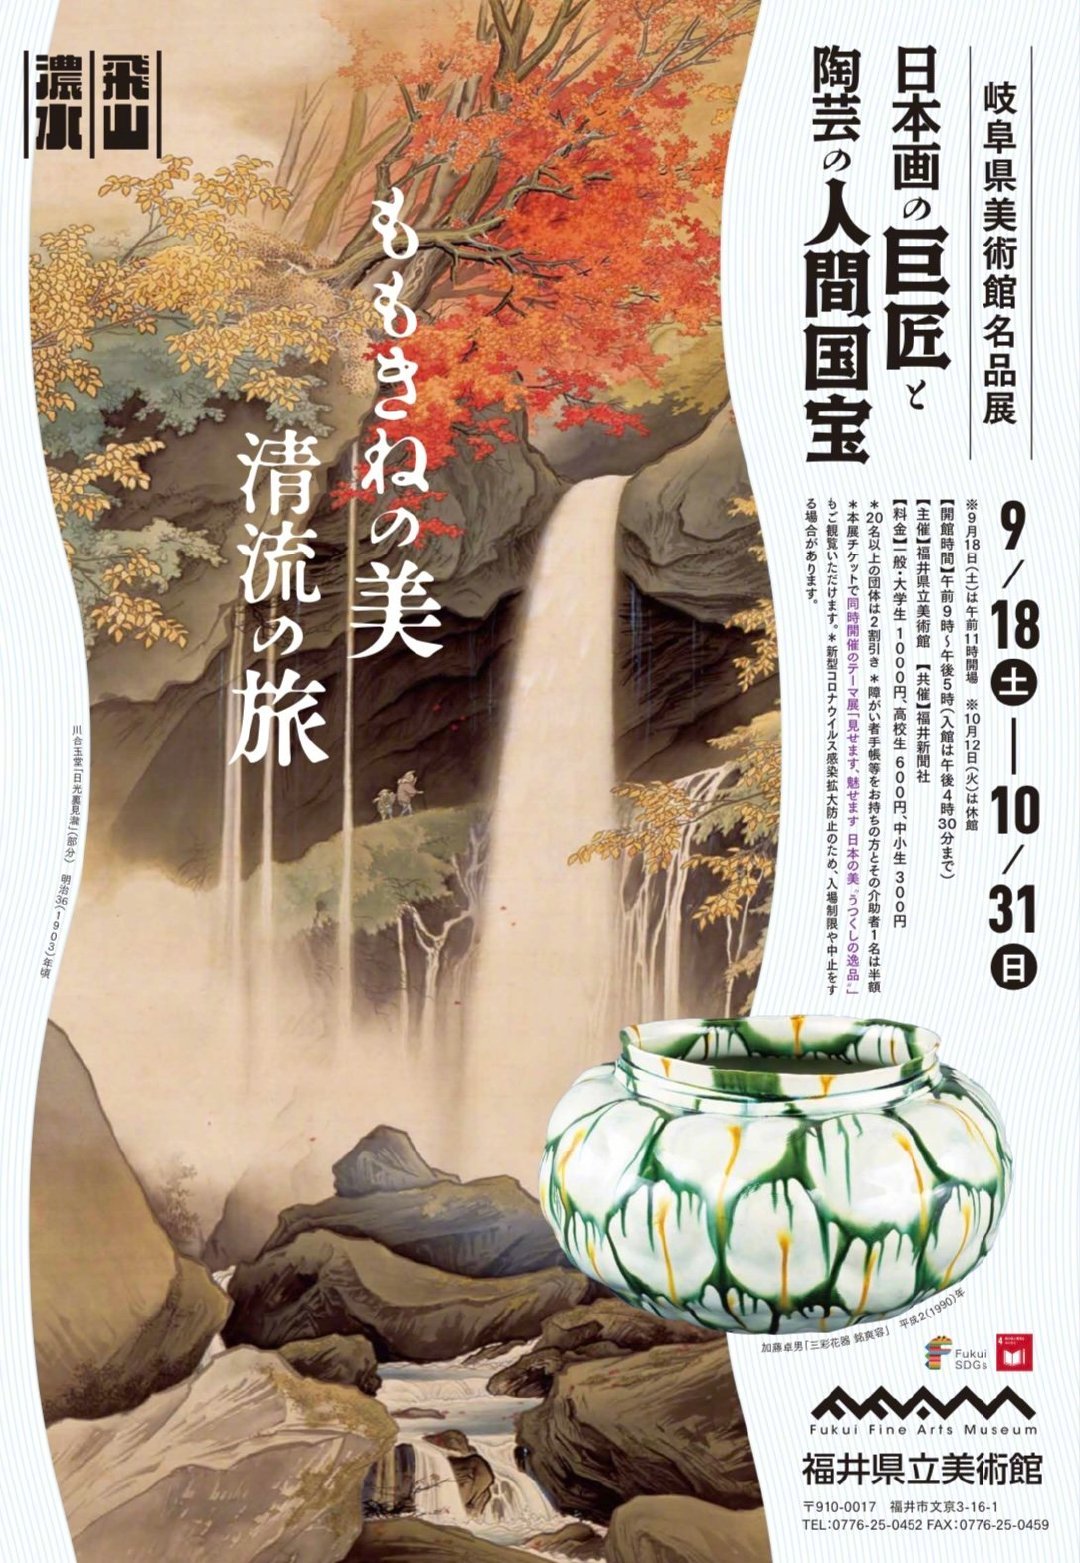 日本美术馆器皿展览,海报 ,创意,版式设计 . 创意日本美术馆器皿展览海报版式设计